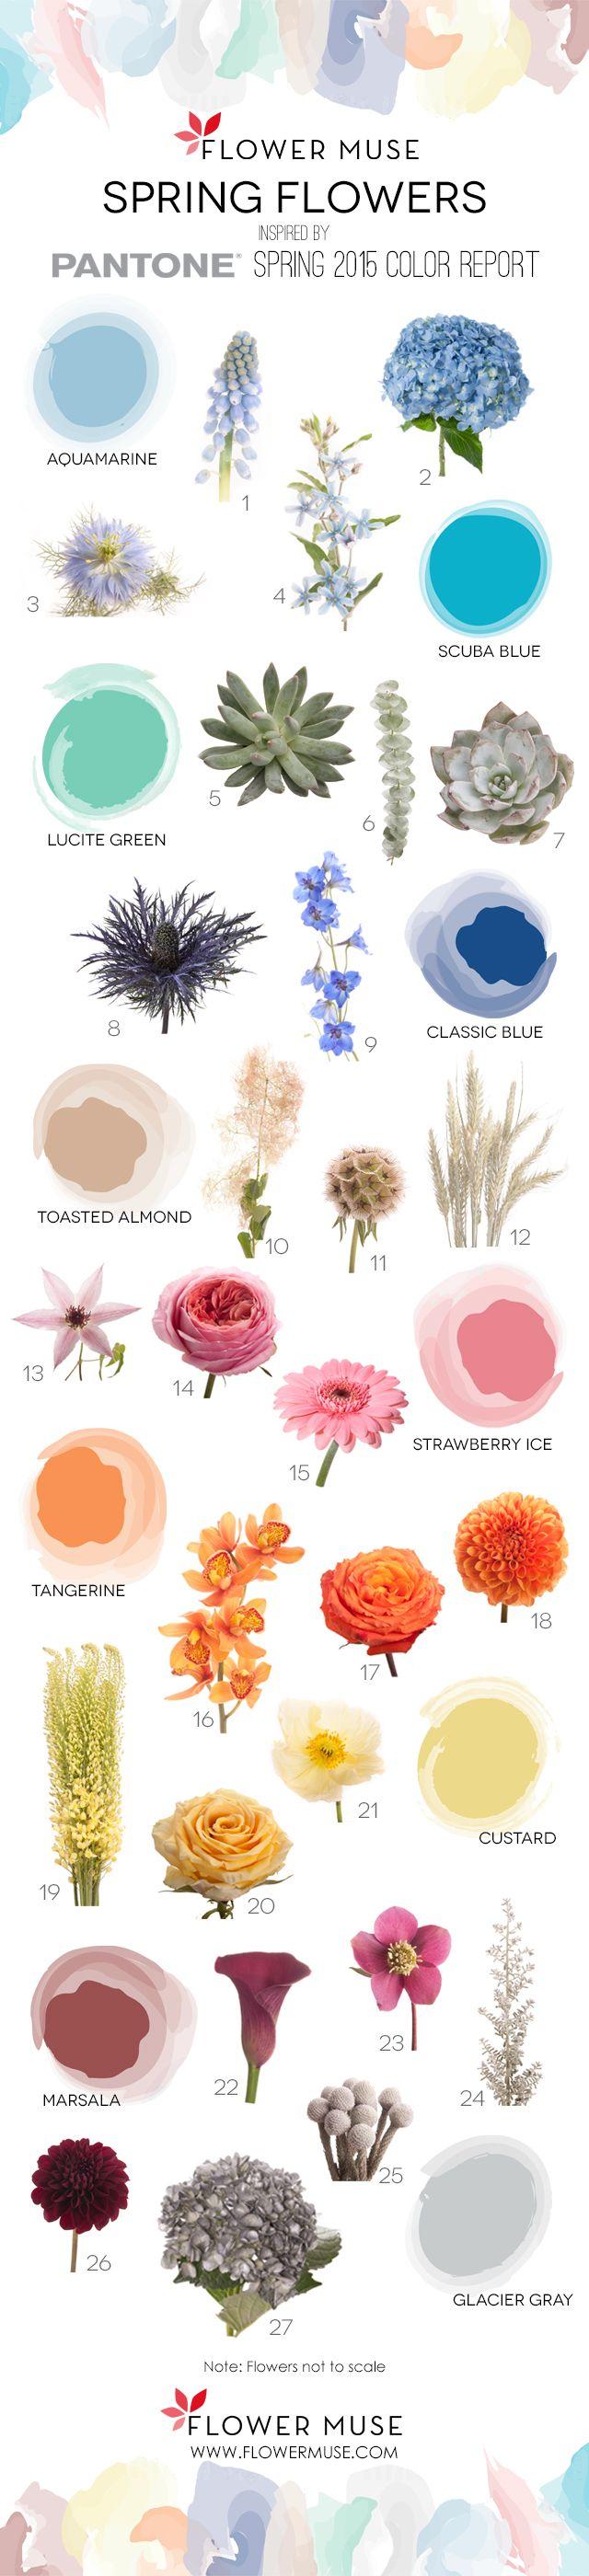 زفاف - 2015 Spring Flowers – Pantone Inspiration - Flower Muse Blog